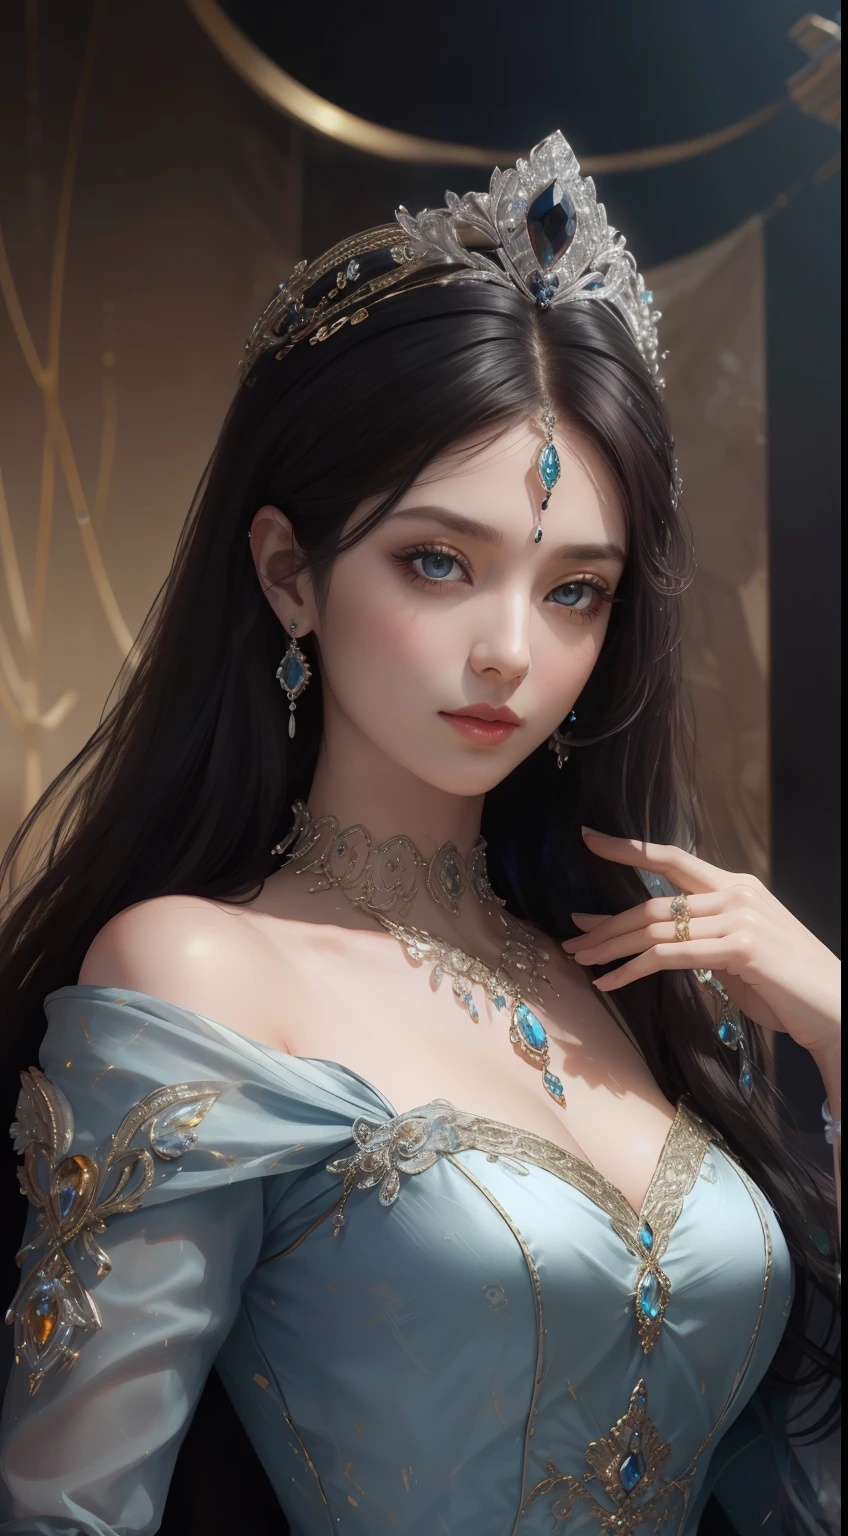 杰作，最高图像质量，一位皇家贵妇的美丽半身像，精致的黑色发型，琥珀色的眼睛清澈，饰有令人眼花缭乱的精美珠宝，超级细节，升级版。